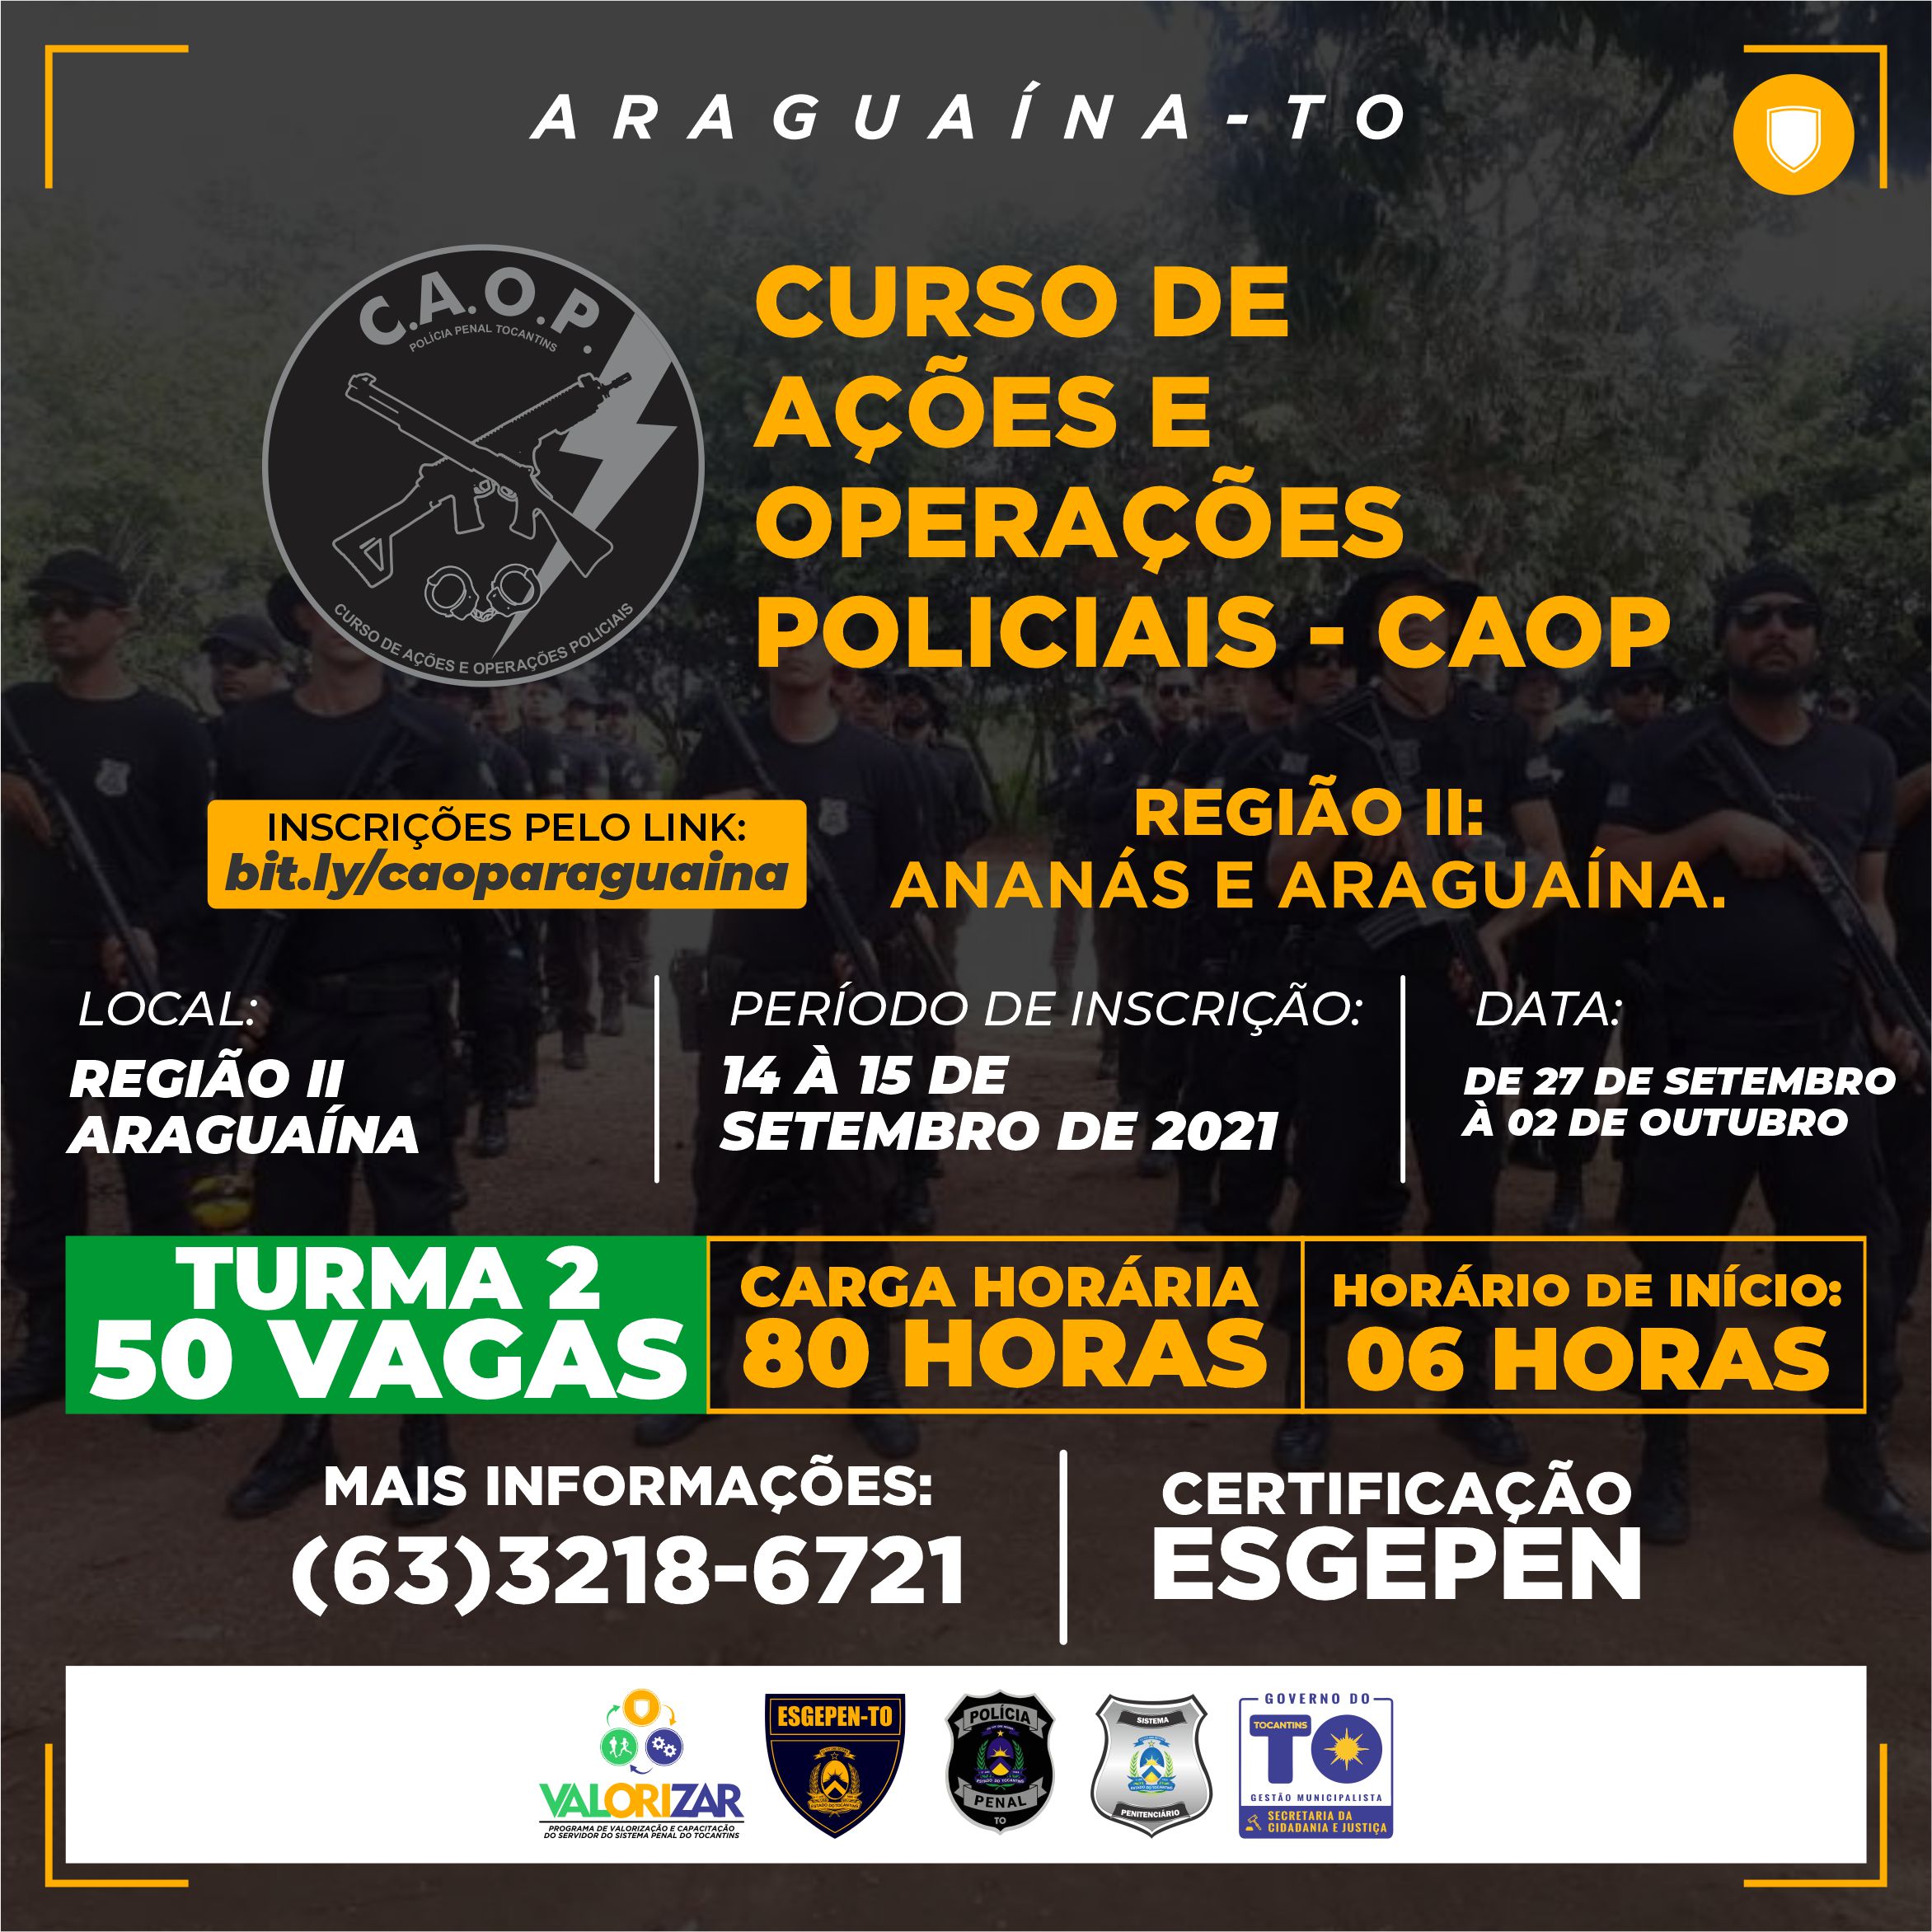 [ARAGUAÍNA TURMA 2] CURSO DE AÇÕES E OPERAÇÕES POLICIAIS - CAOP